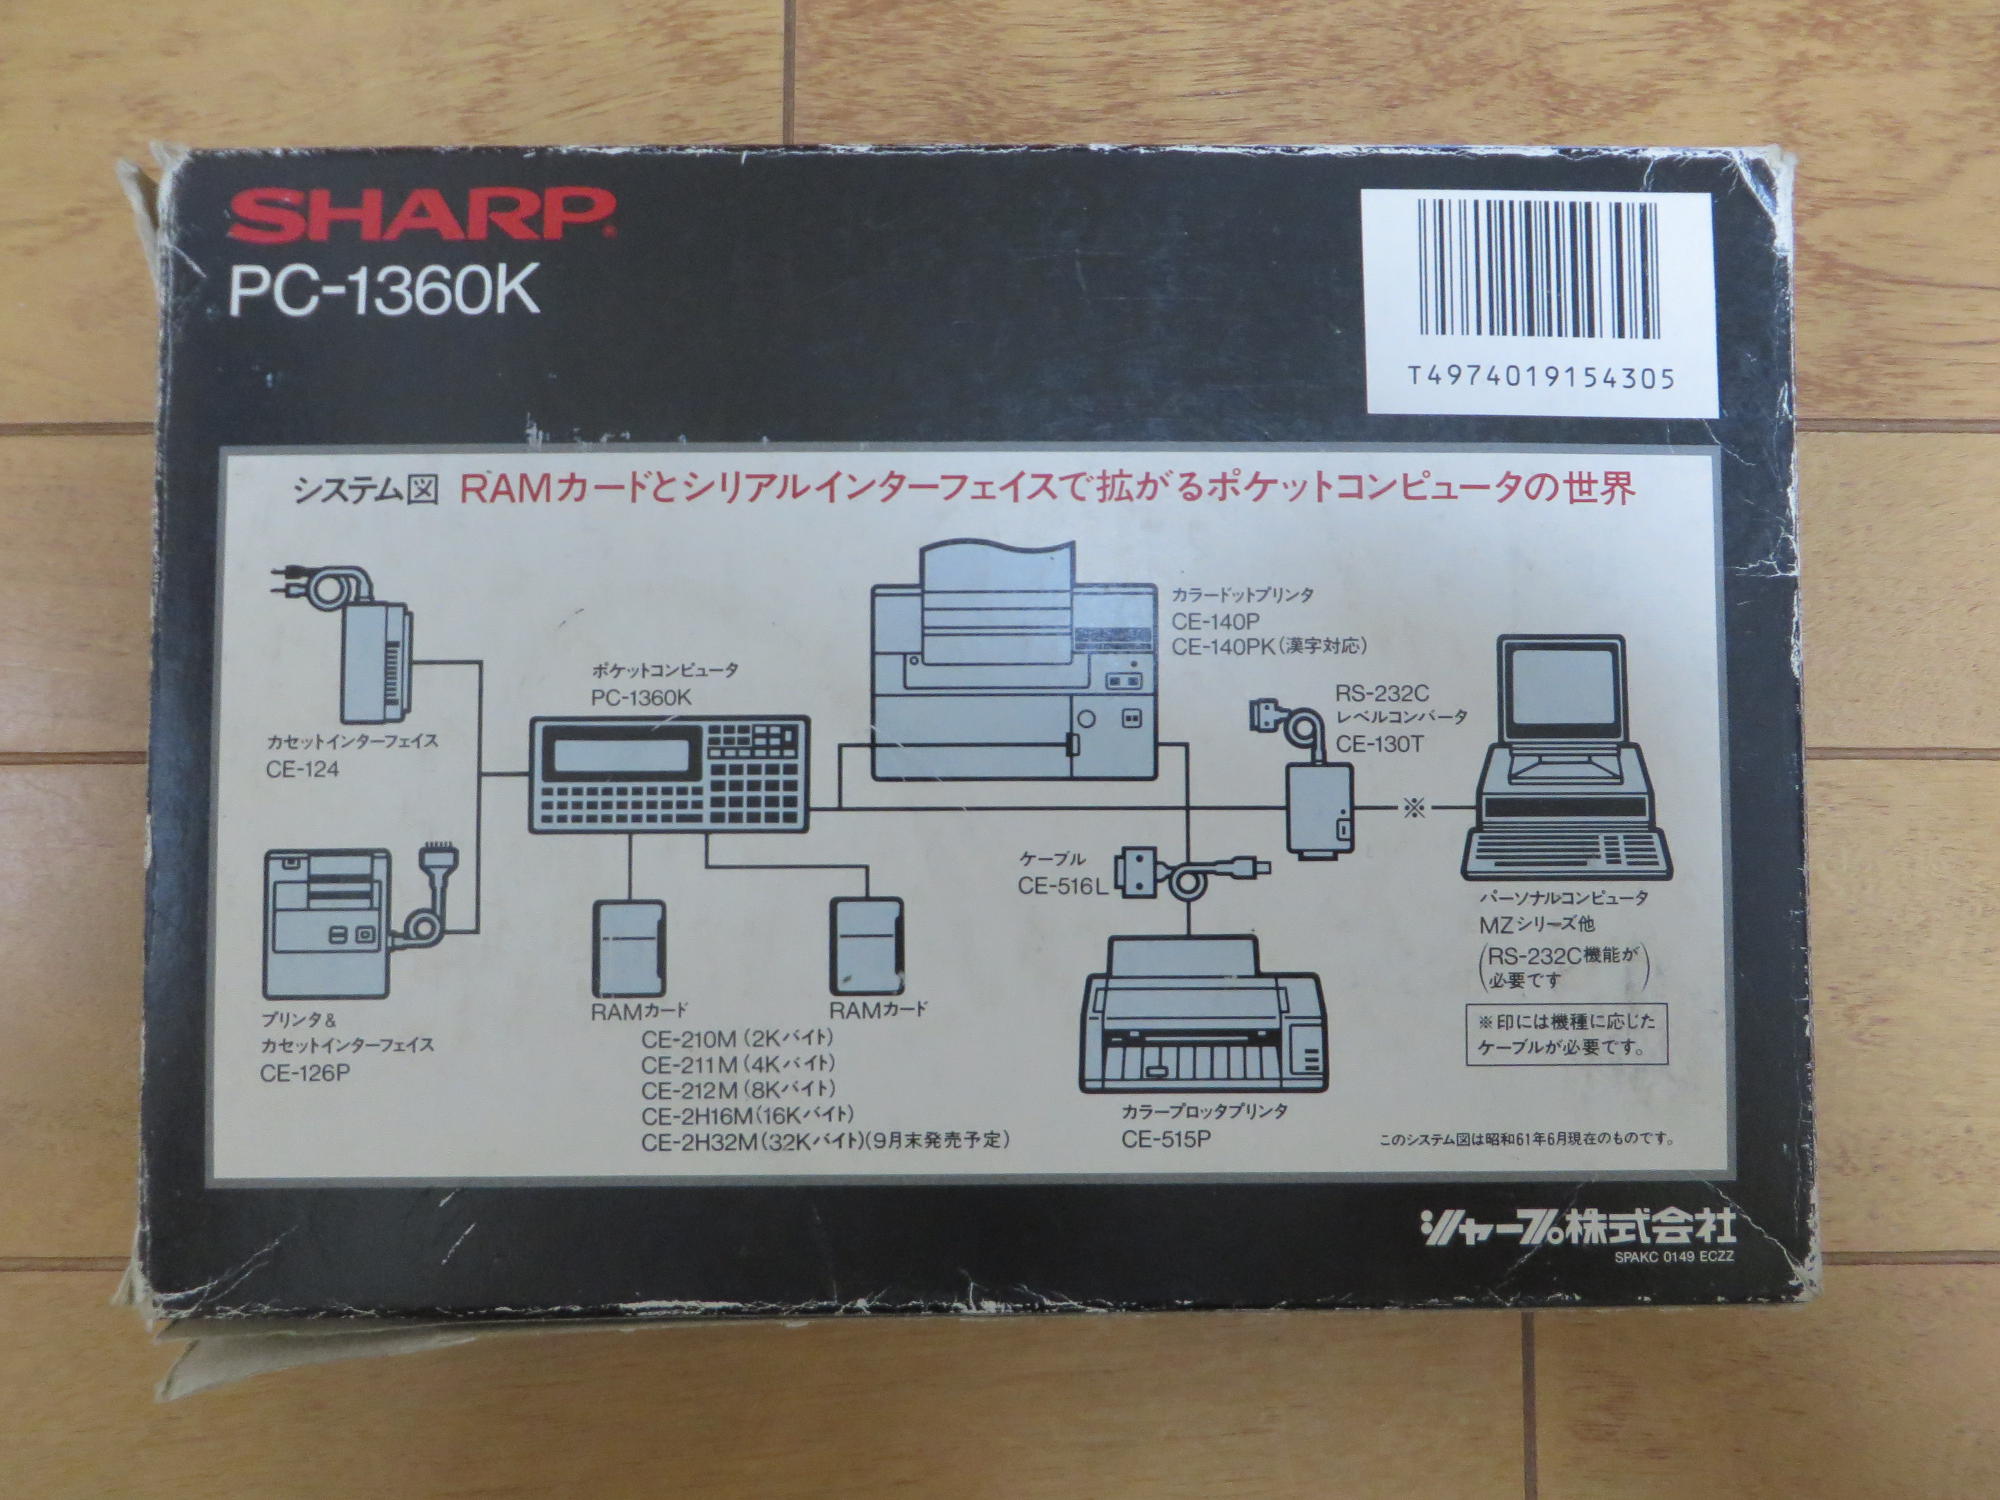 シャープのポケコン、ポケットコンピューター PC-1360K | urashita.com 浦下.com (ウラシタドットコム)